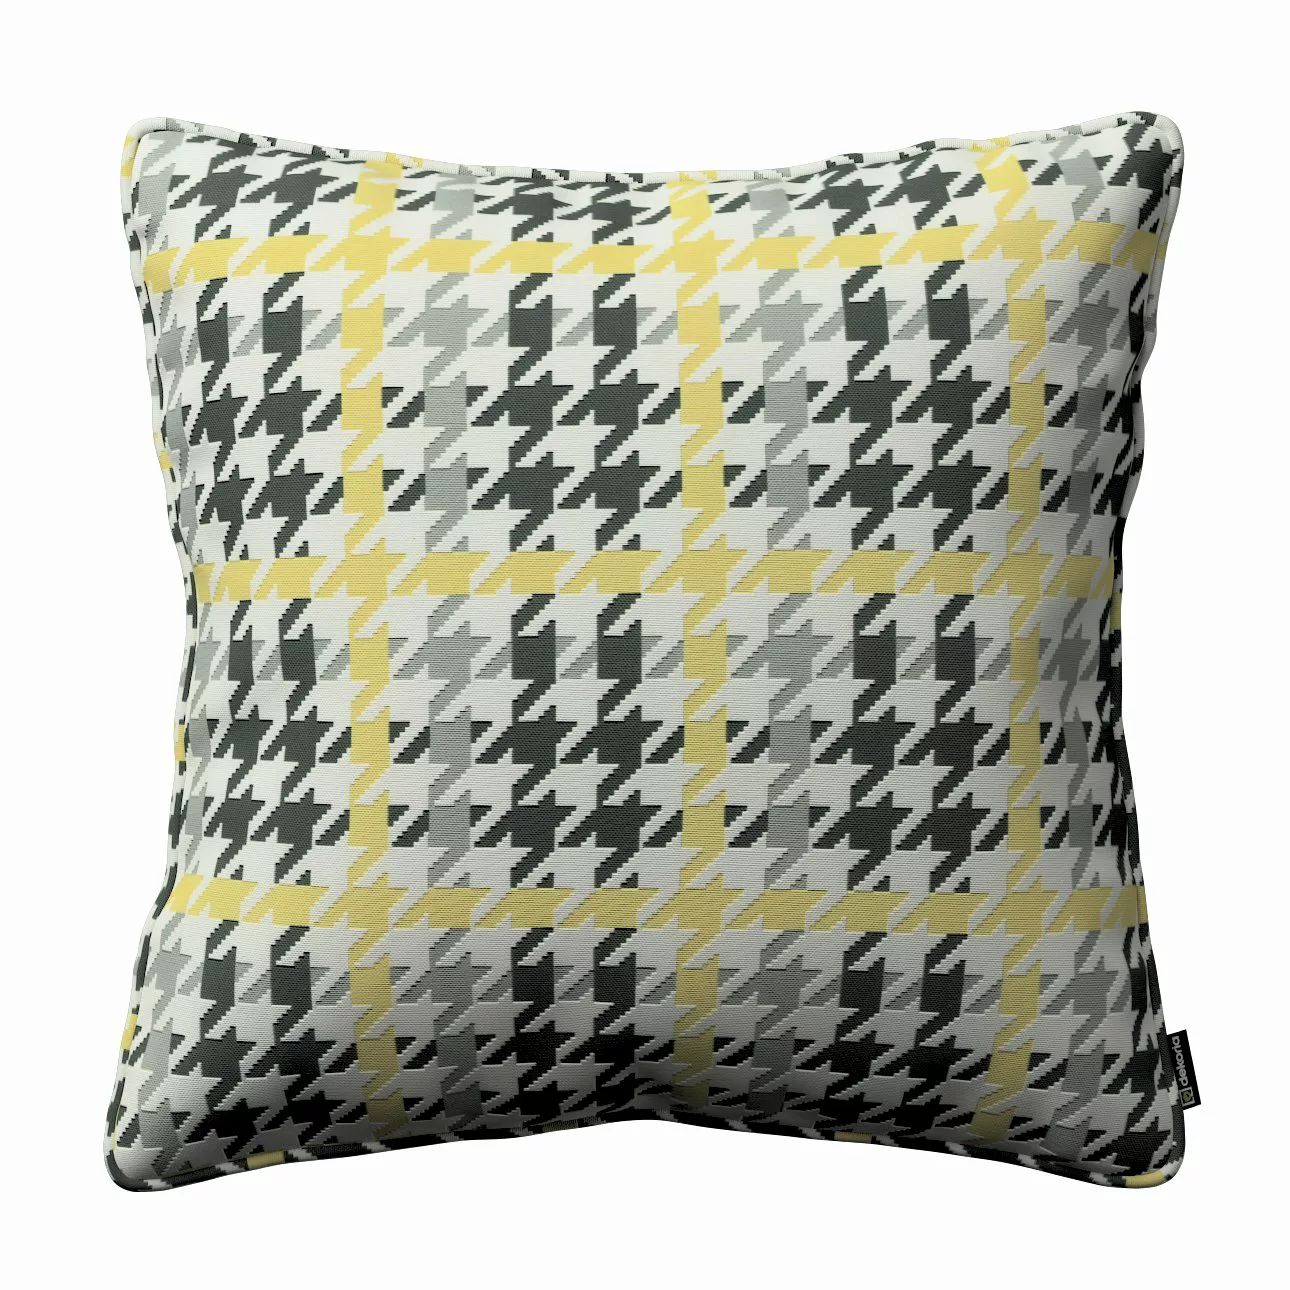 Kissenhülle Gabi mit Paspel, gelb-schwarz, 60 x 60 cm, SALE (137-79) günstig online kaufen